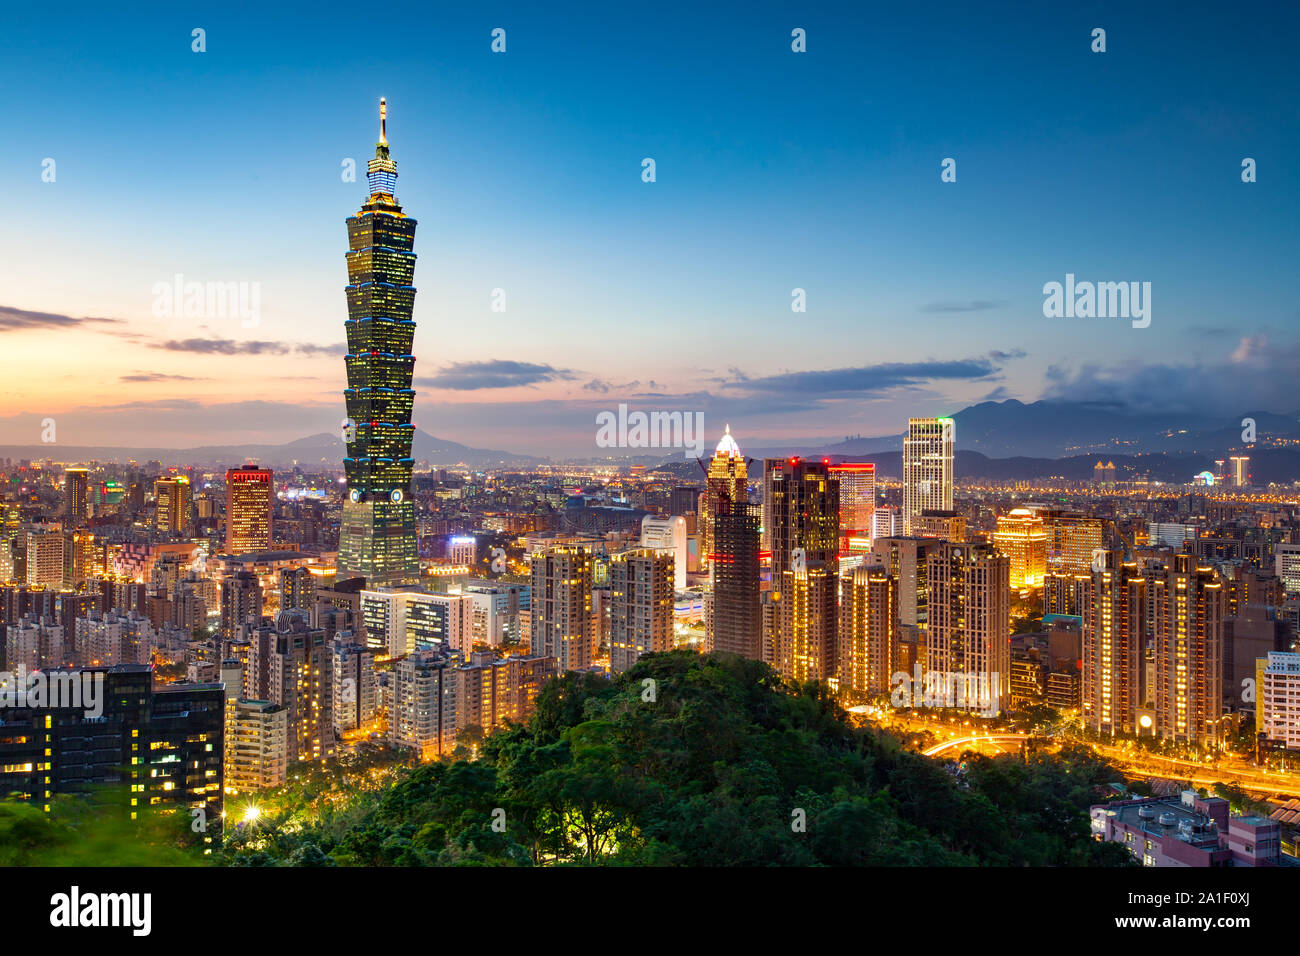 City of Taipei at night, Taiwan Stock Photo